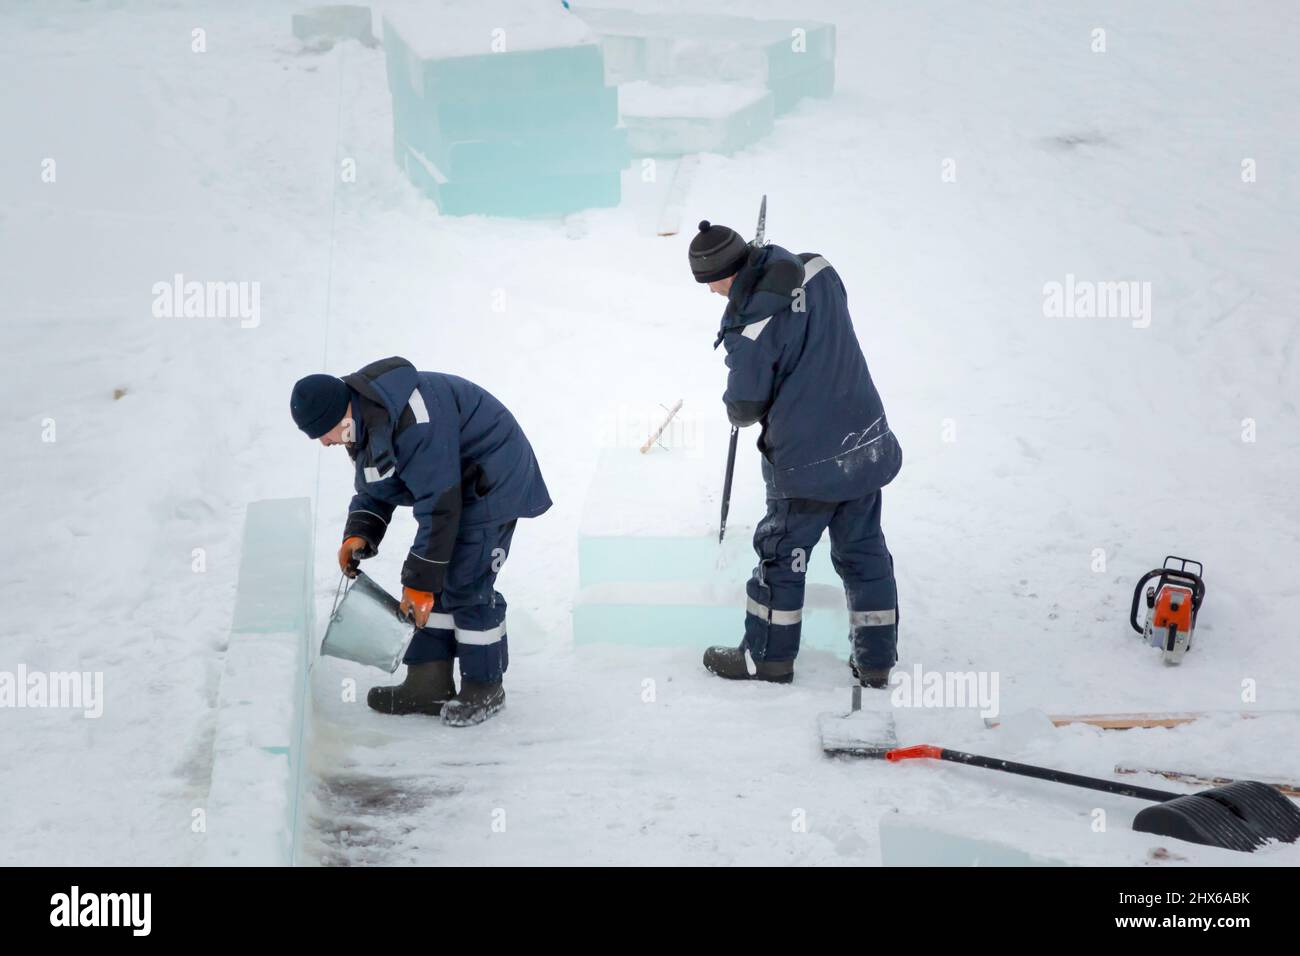 Ein Eisstädter in einer blauen Kapuzenjacke gießt Wasser aus einem Eimer über einen Eisblock Stockfoto